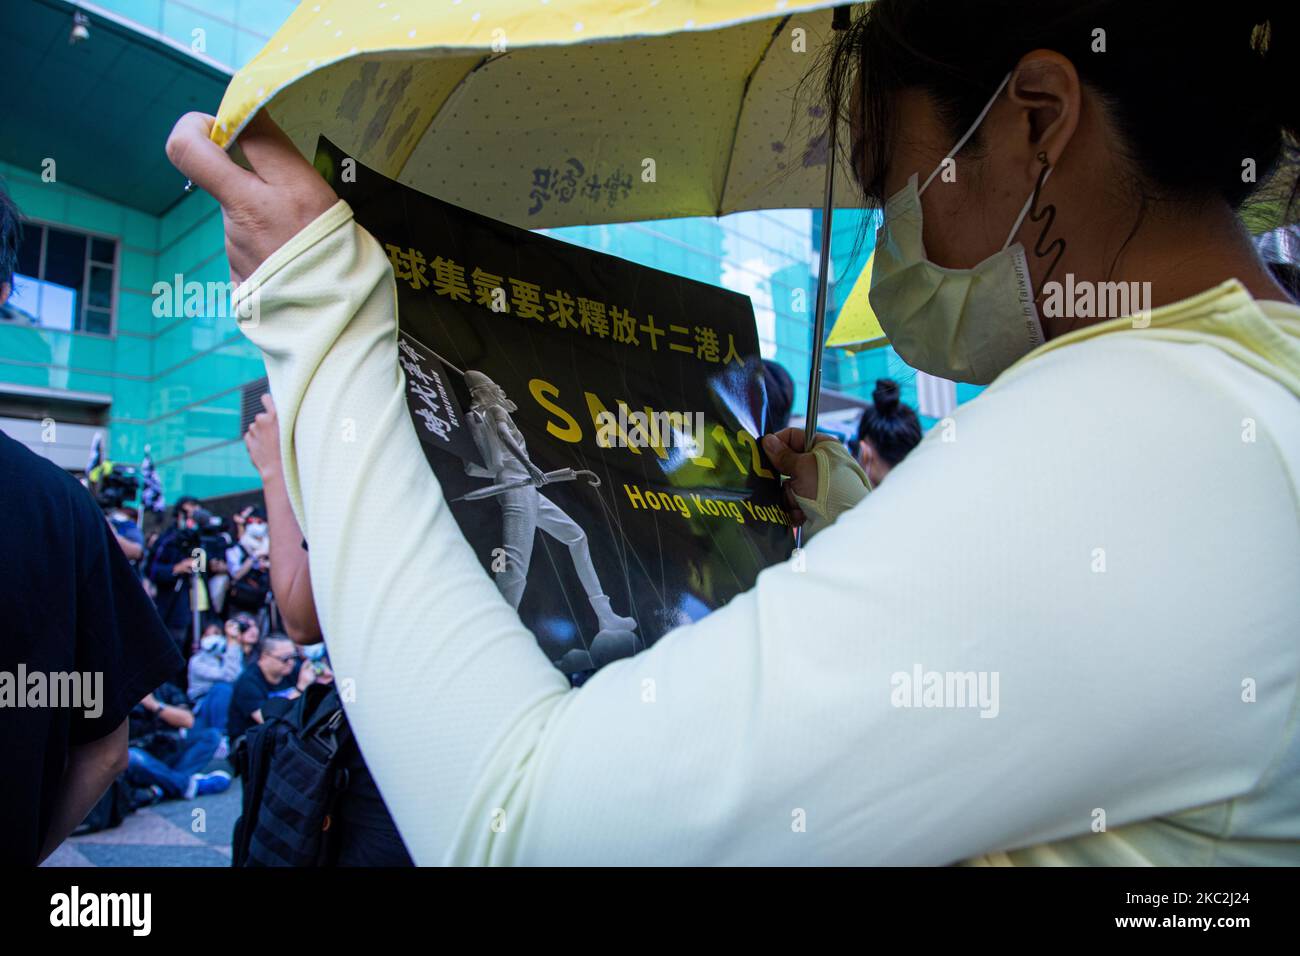 Un manifestante mantiene un eslogan durante la marcha para exigir la liberación de 12 detenidos de Hong Kong en Taipei, Taiwán, el 25 de octubre de 2020. Cientos de personas marcharon en la capital de Taiwán el domingo para exigir la liberación de 12 manifestantes antigubernamentales de Hong Kong que supuestamente viajaban ilegalmente en barco a Taiwán cuando las autoridades chinas los capturaron y detuvieron en agosto. (Foto de Annabelle Chih/NurPhoto) Foto de stock